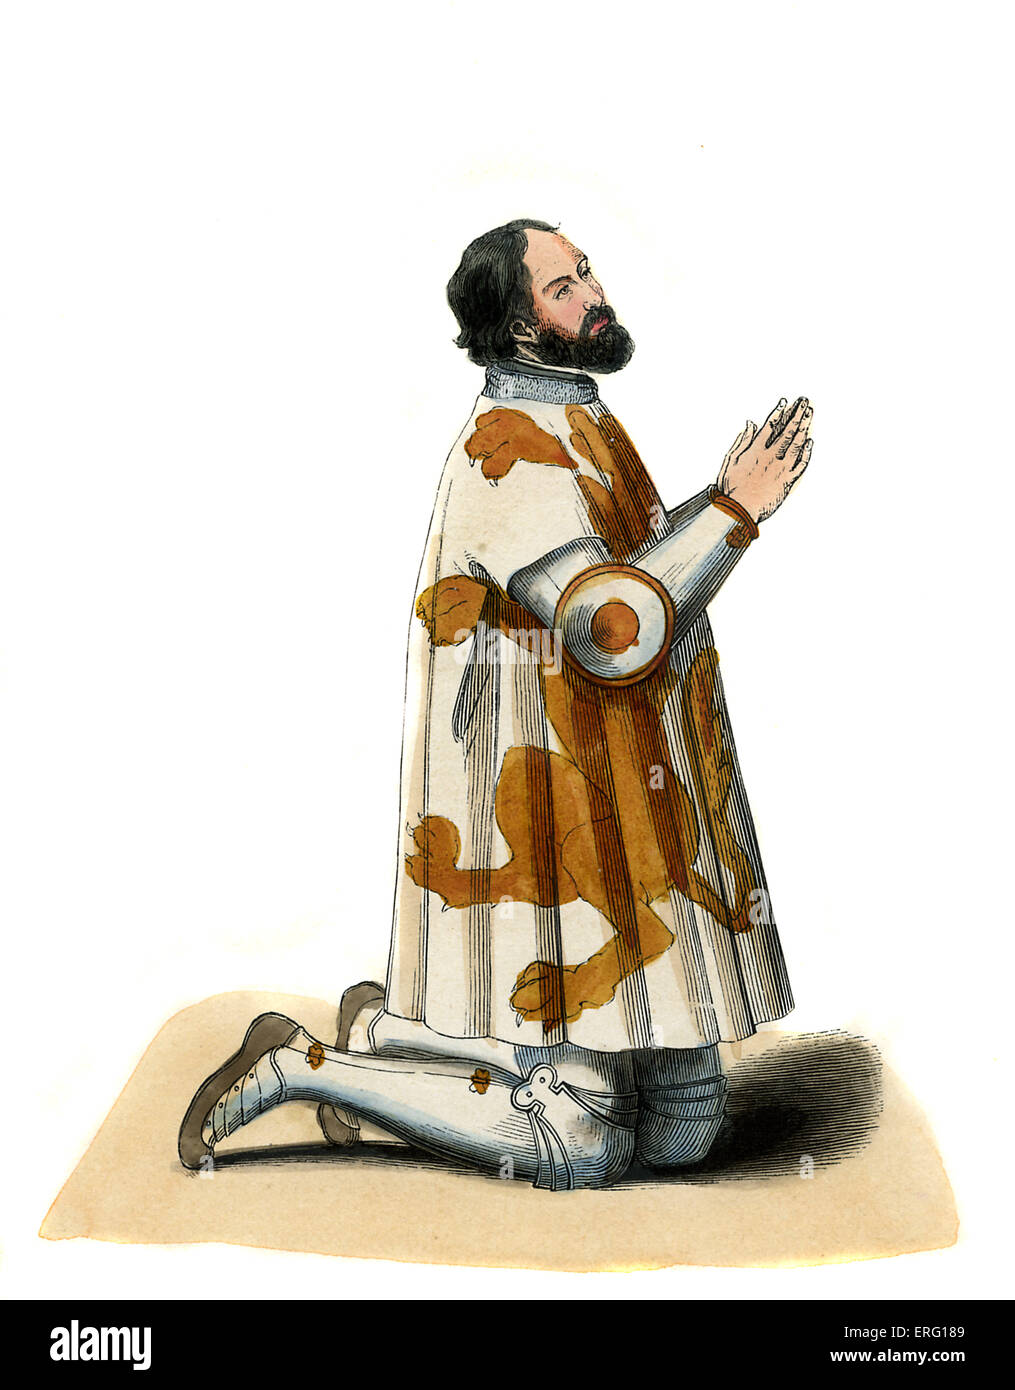 Französisch Ehrenmann - Kostüm des 14. Jahrhunderts. Im Bild kniend im Gebet Position tragen Soubreveste (Tunika für Rüstung) Stockfoto